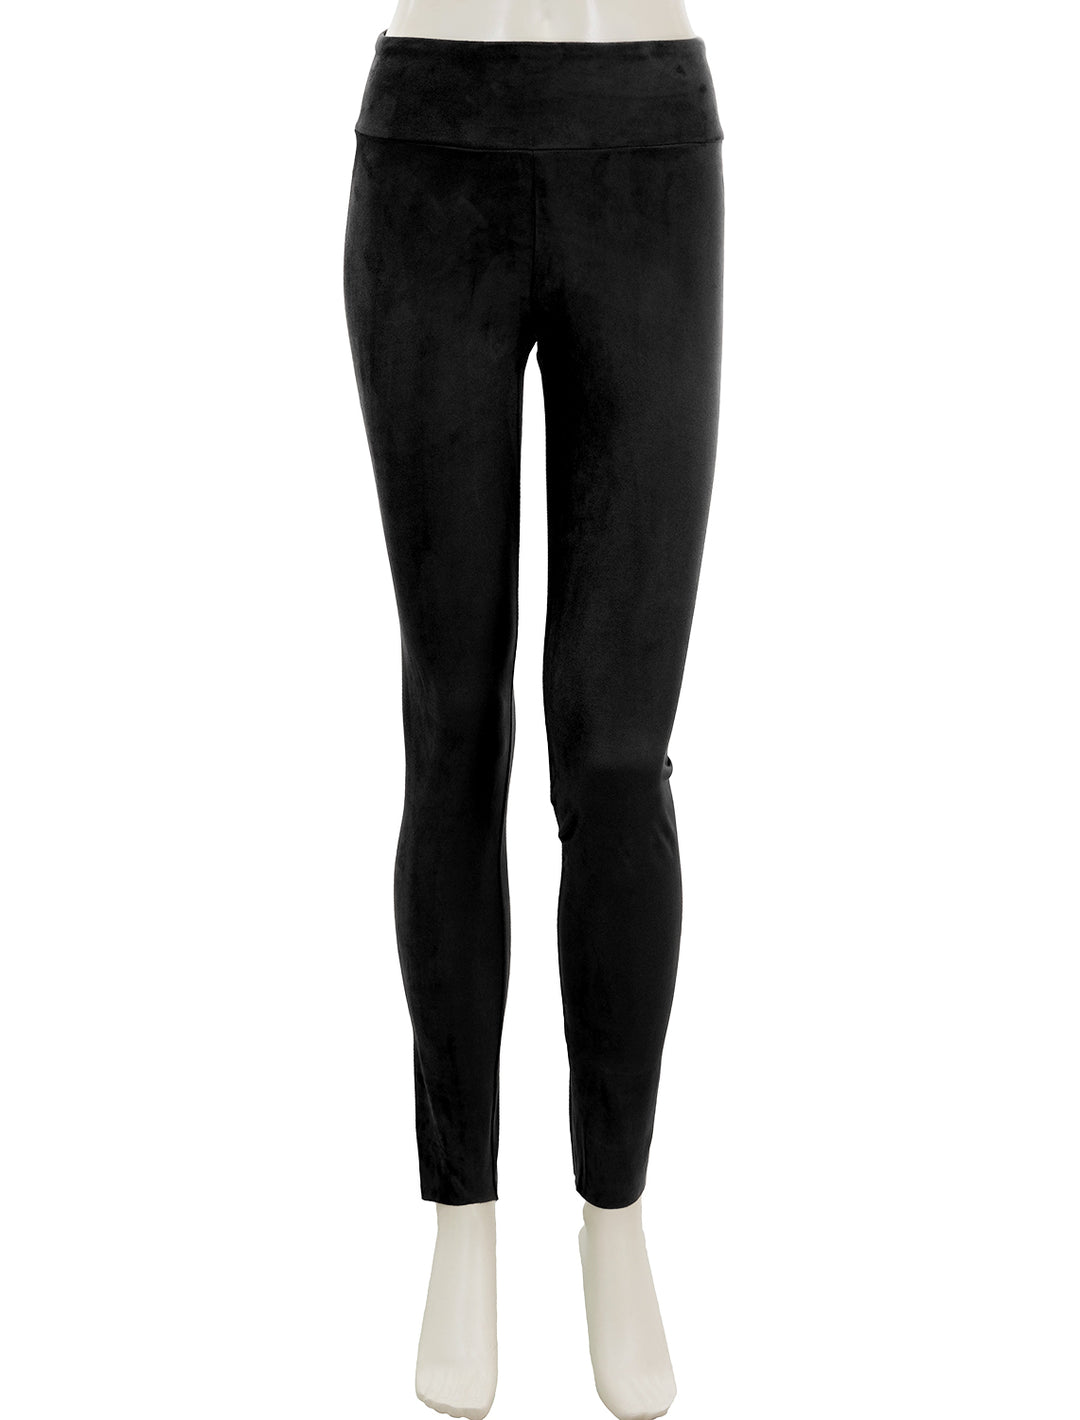 Front view of Splendid's vegan suede leggings in black.